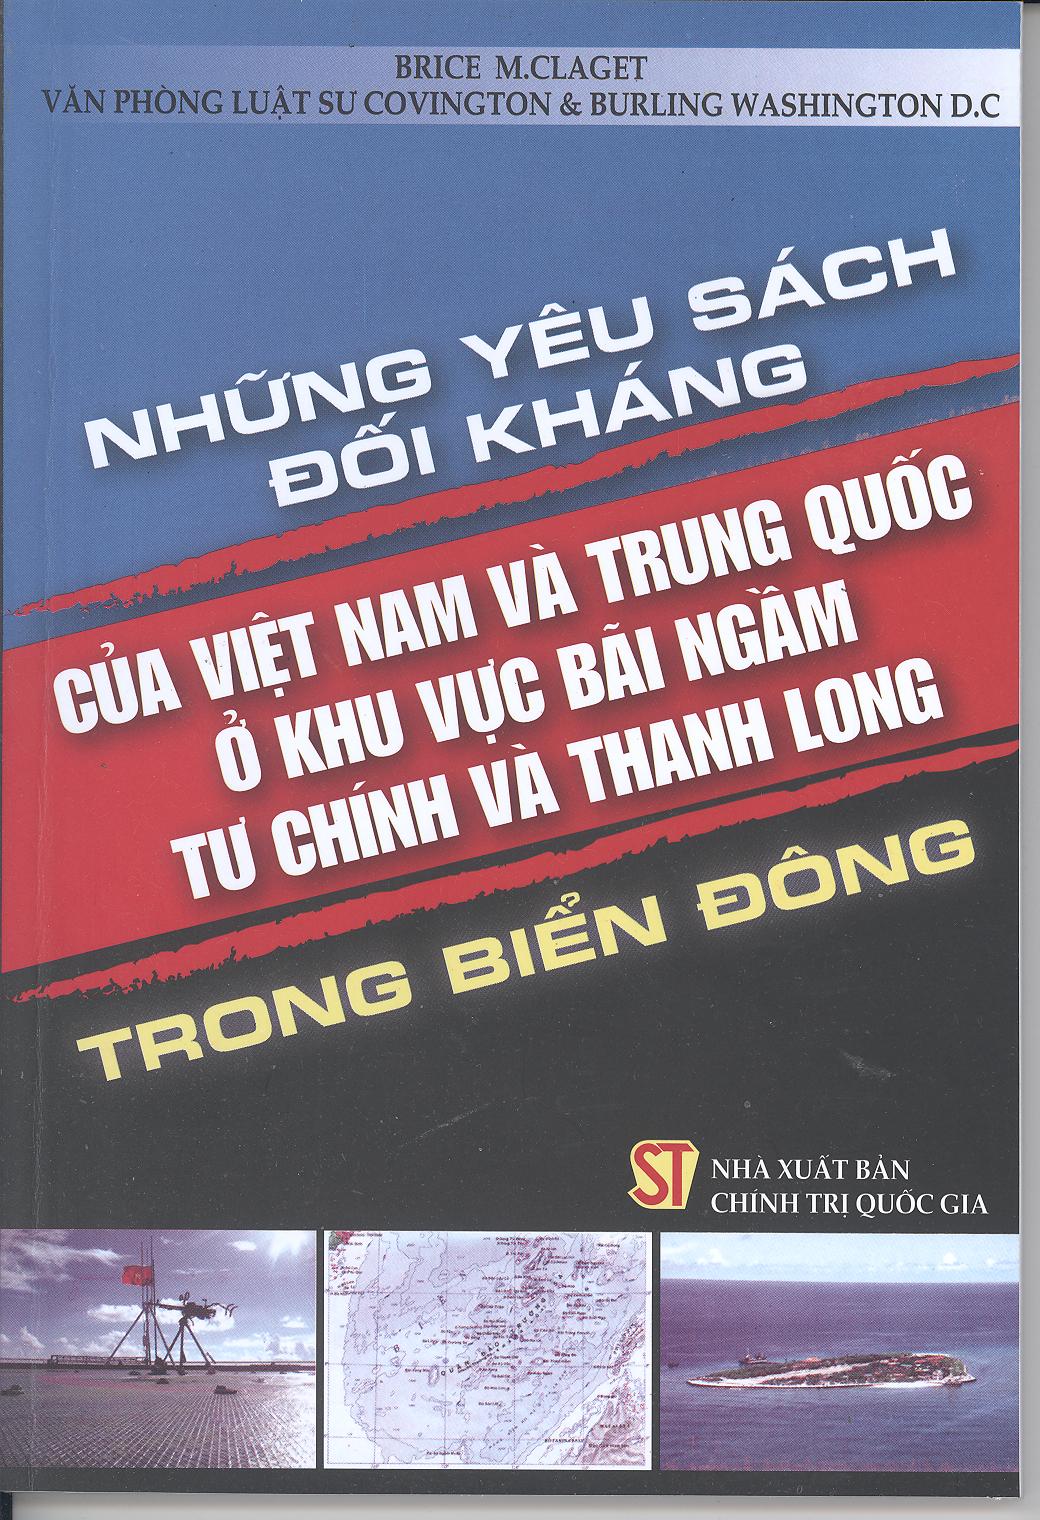 Những yêu sách đối kháng của Việt Nam và Trung Quốc ở khu vực bãi ngầm Tư Chính và Thanh Long trong Biển Đông 